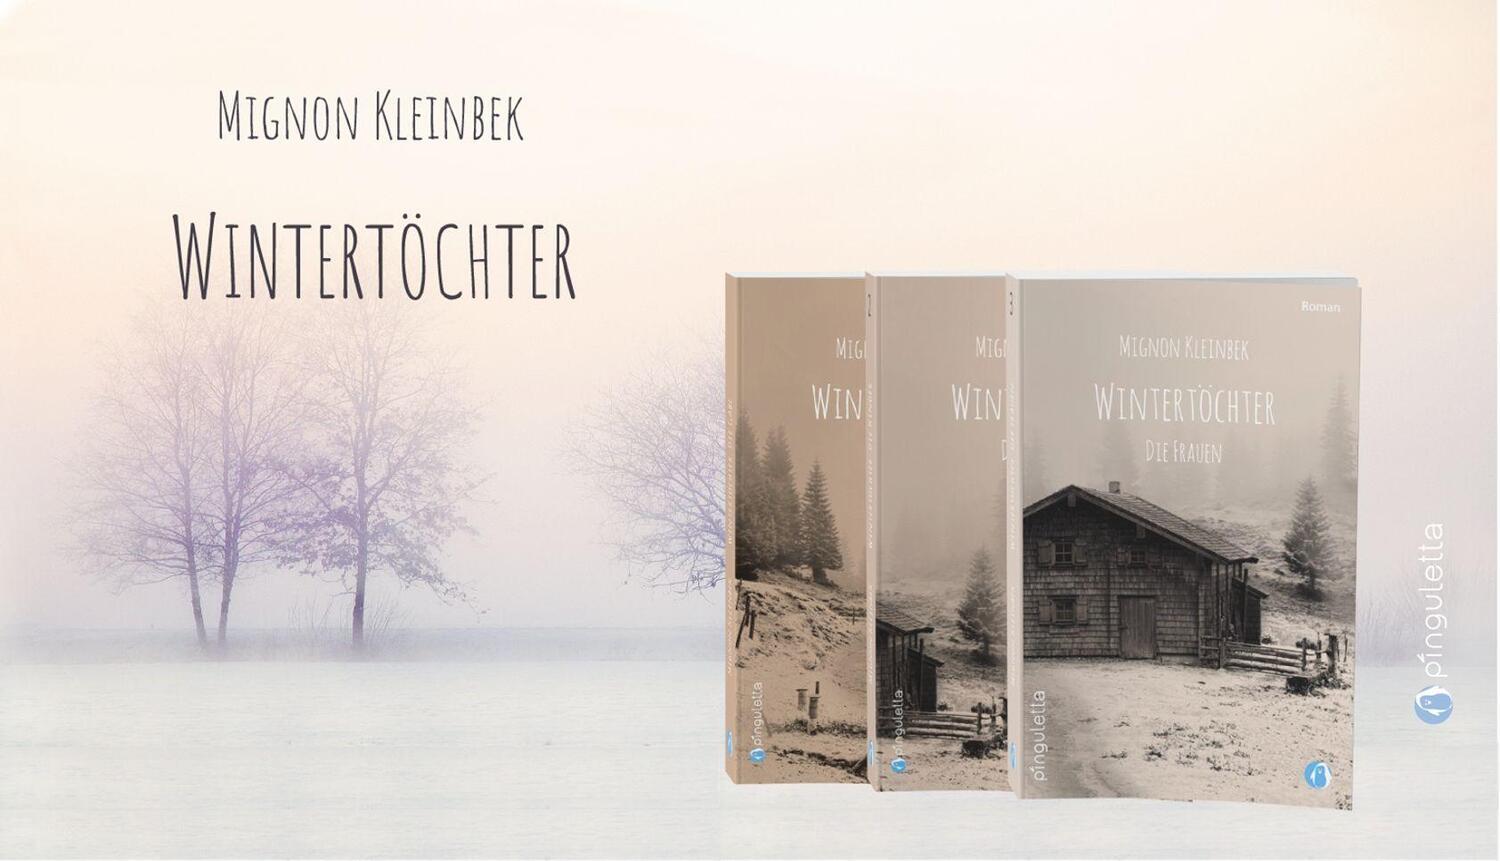 Bild: 9783981767896 | Wintertöchter - Die Kinder | Mignon Kleinbek | Taschenbuch | Deutsch